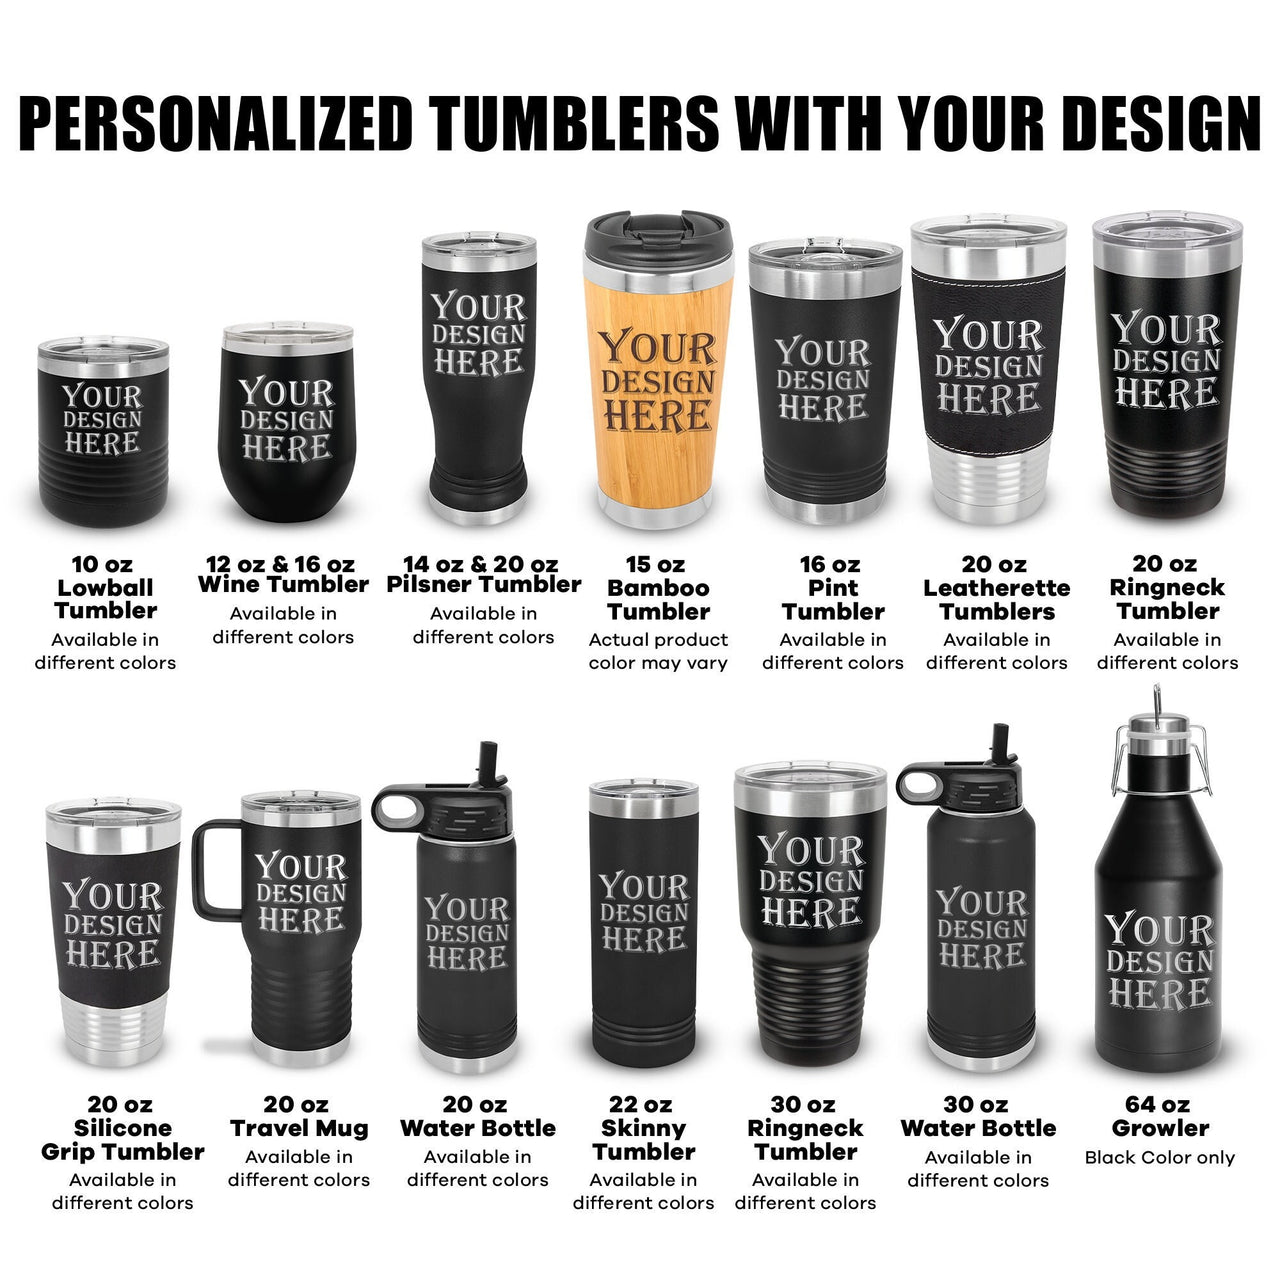 Design Your Tumbler